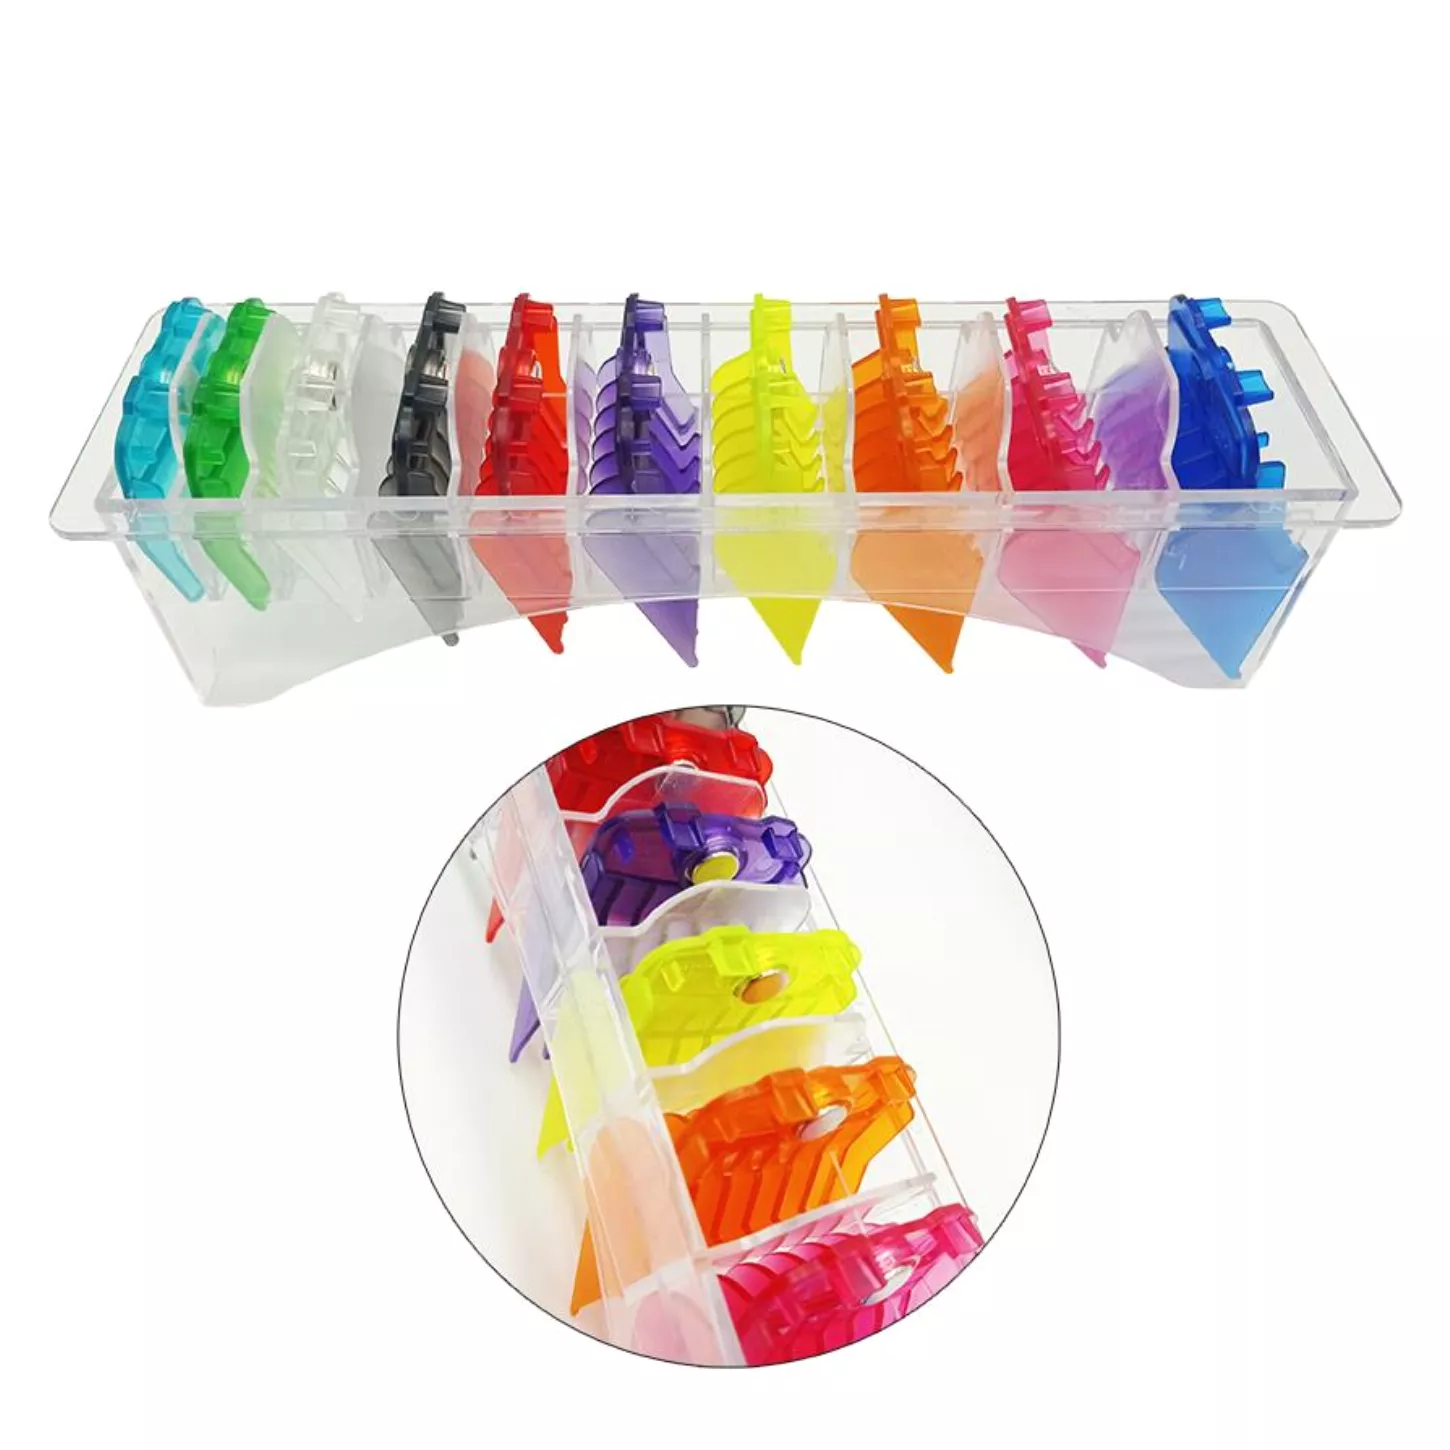 Set de 10 peines coloridos imantados de plástico para máquina